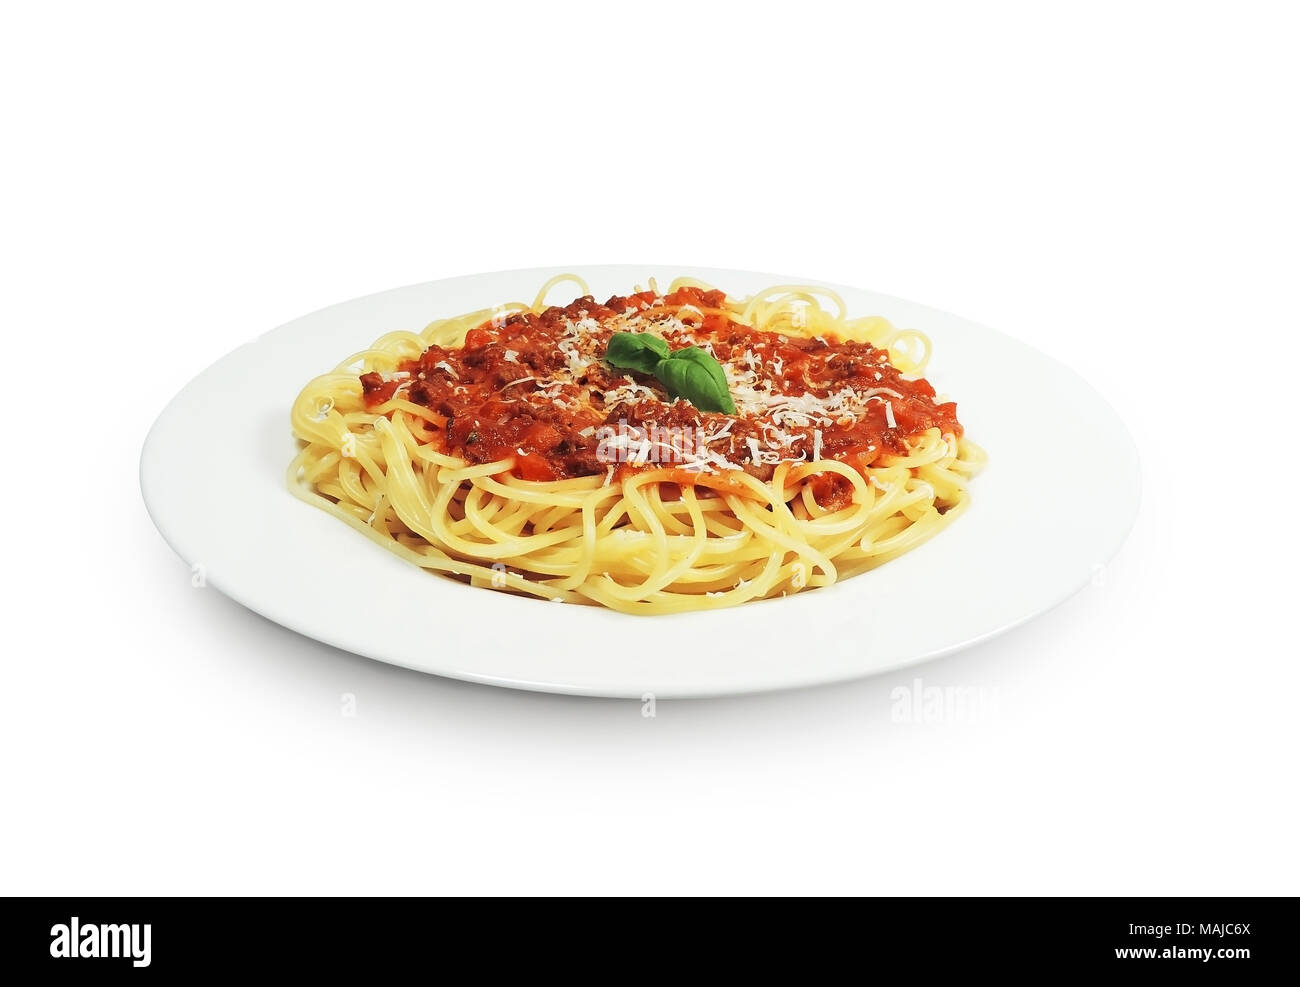 Los espaguetis a la boloñesa sobre una placa blanca con hojas de albahaca, aislado sobre fondo blanco. La cocina italiana, cocina tradicional. Foto de stock